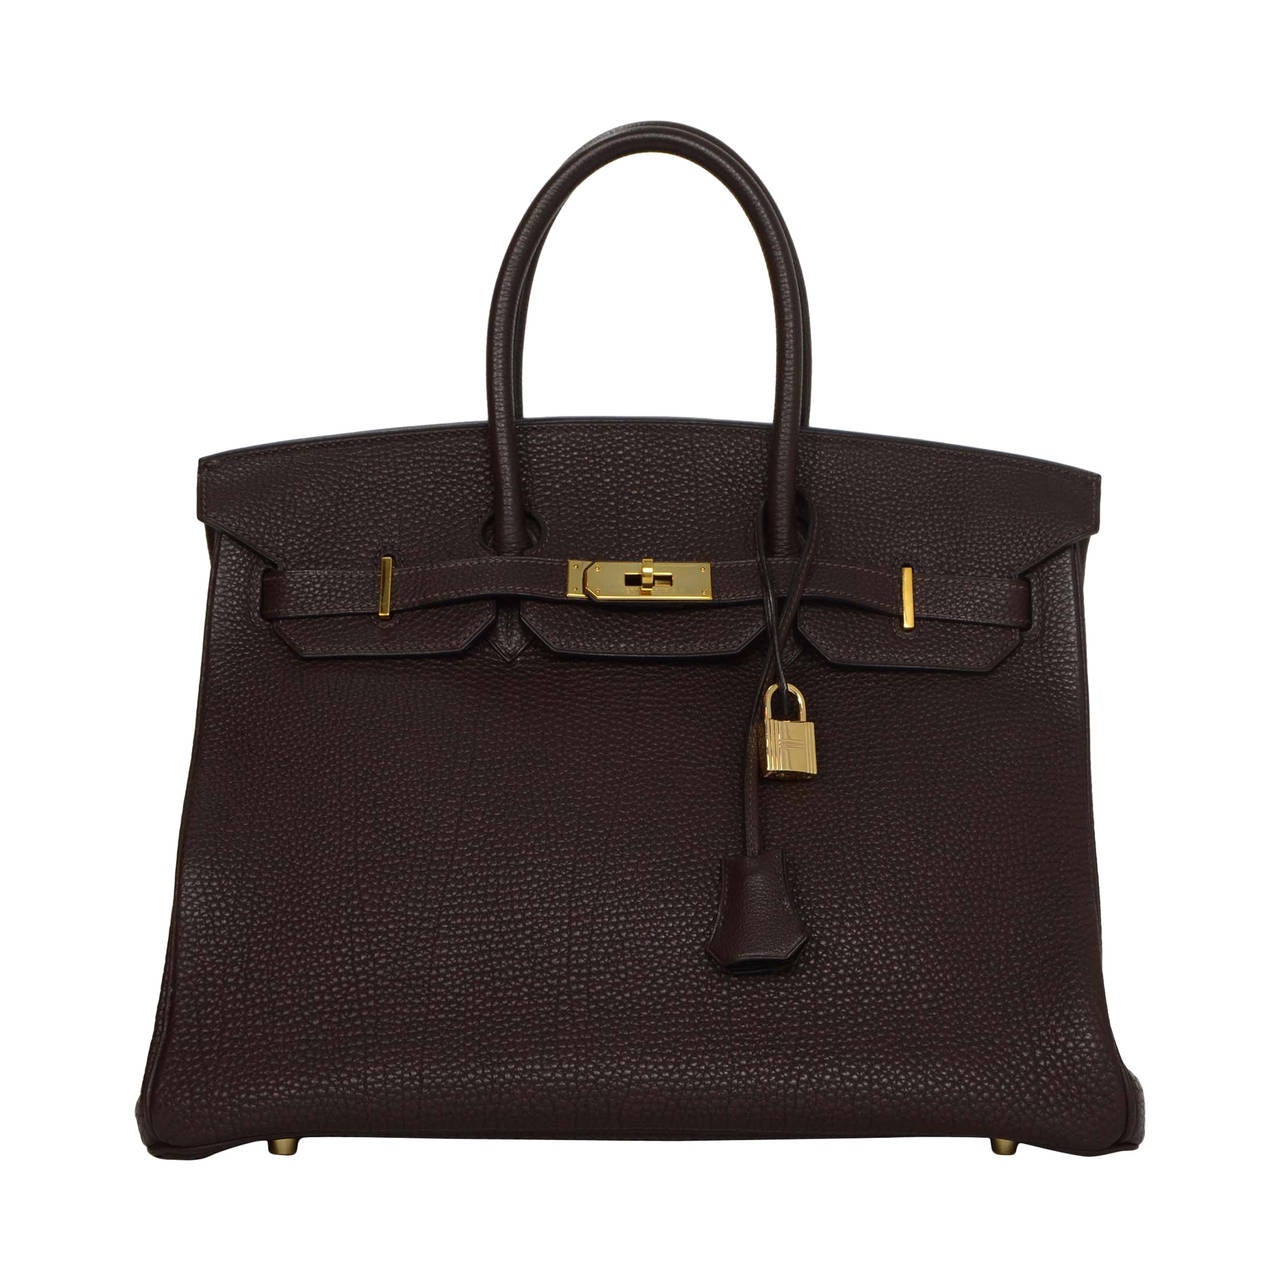 HERMES Brown Togo Leather 35cm Birkin Bag GHW